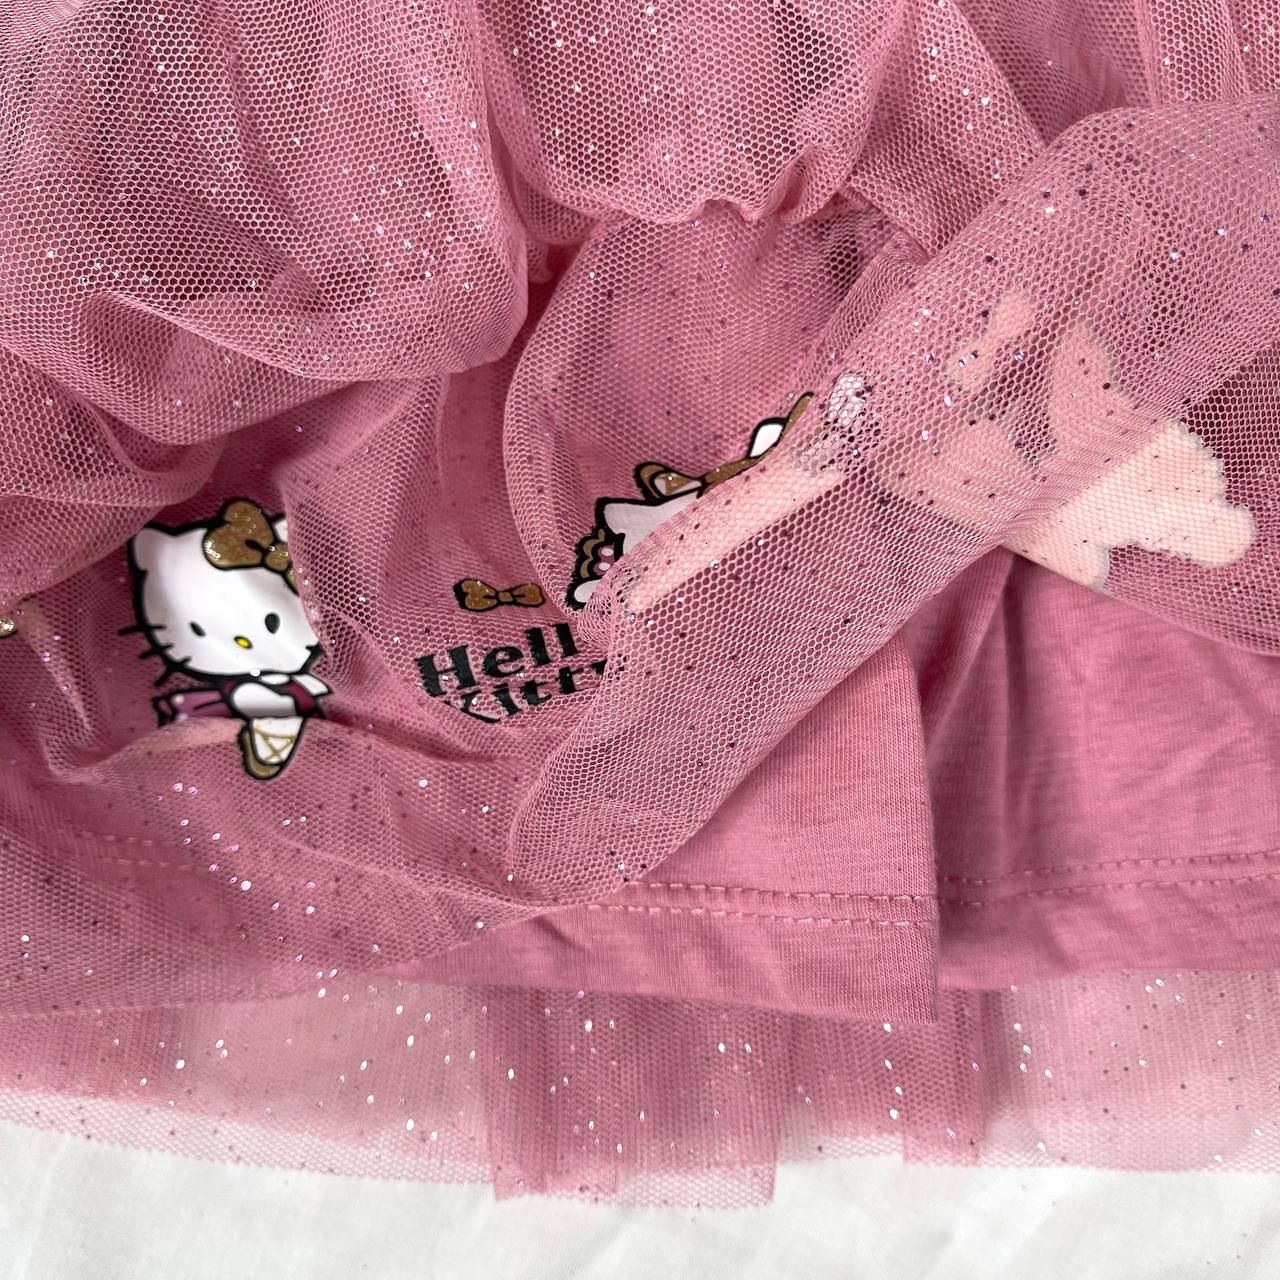  11kg - 22kg Chân váy H.M voan lưng thun co giãn, có lót thun cho bé gái- Hồng Hello Kitty CV09 